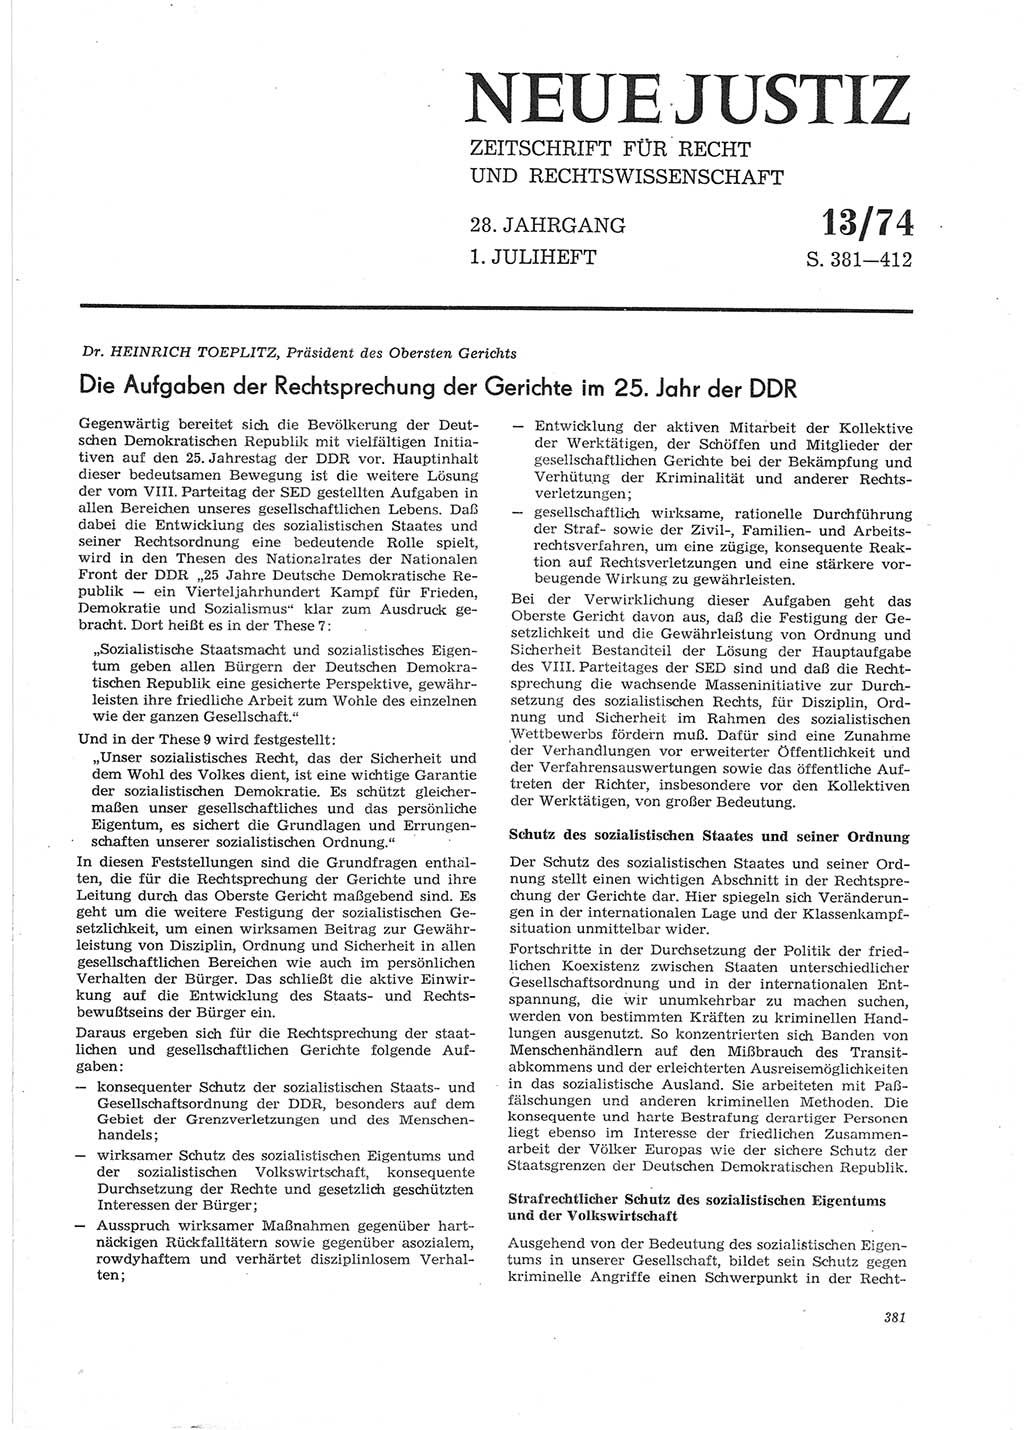 Neue Justiz (NJ), Zeitschrift für Recht und Rechtswissenschaft [Deutsche Demokratische Republik (DDR)], 28. Jahrgang 1974, Seite 381 (NJ DDR 1974, S. 381)